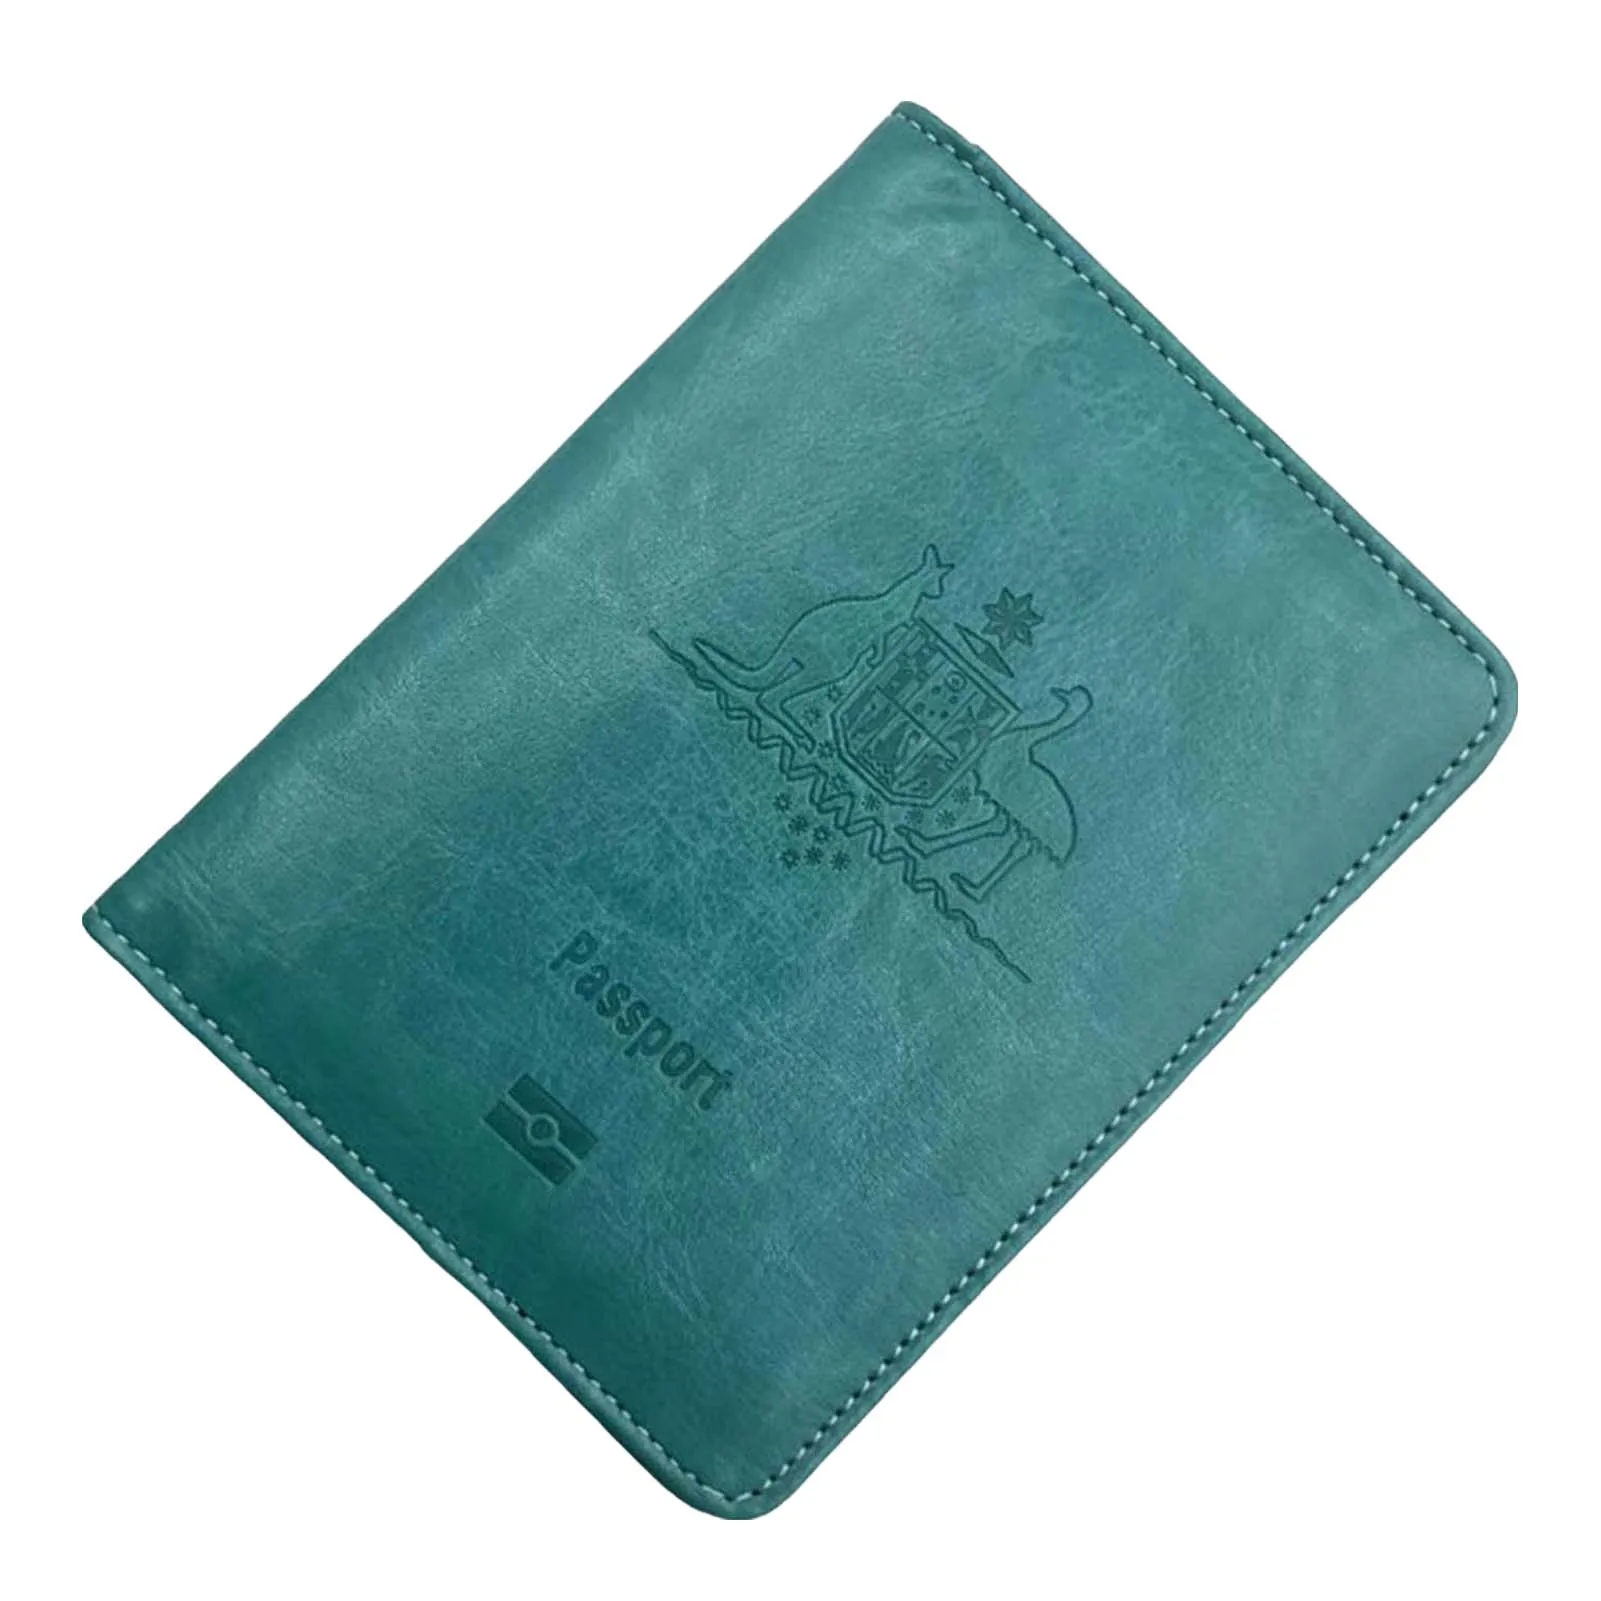 Soporte antirrobo de cuero para pasaporte de negocios, BILLETERA, accesorios de viaje para mujeres y hombres